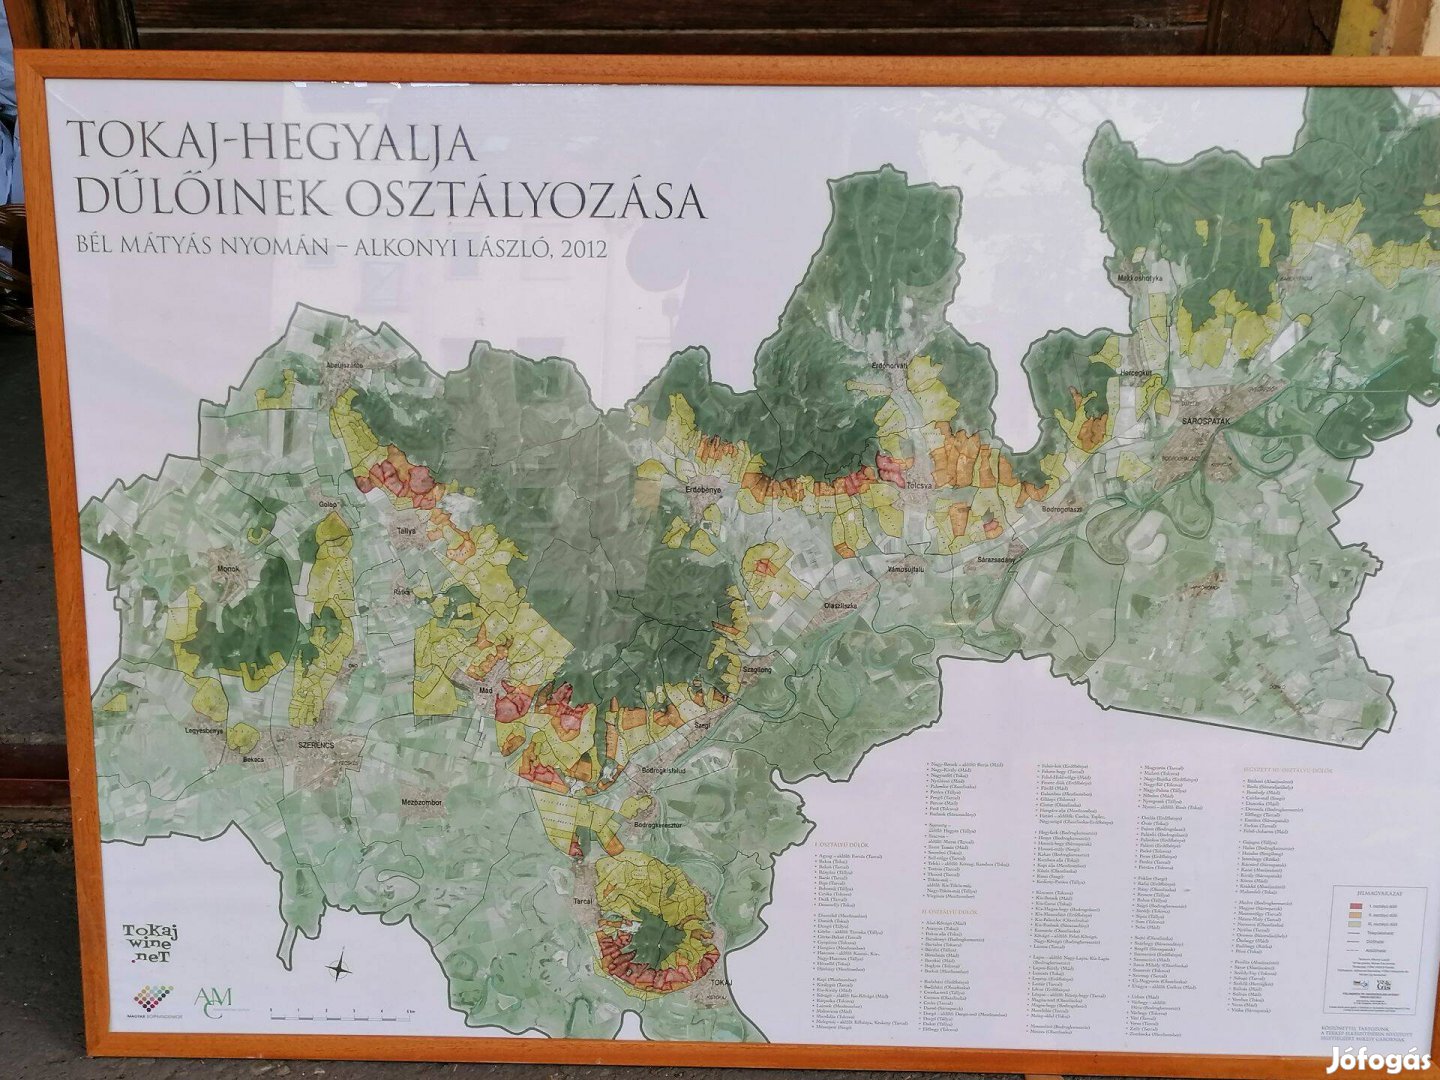 Tokaj-Hegyalja térkép keretezve, üveg mögött